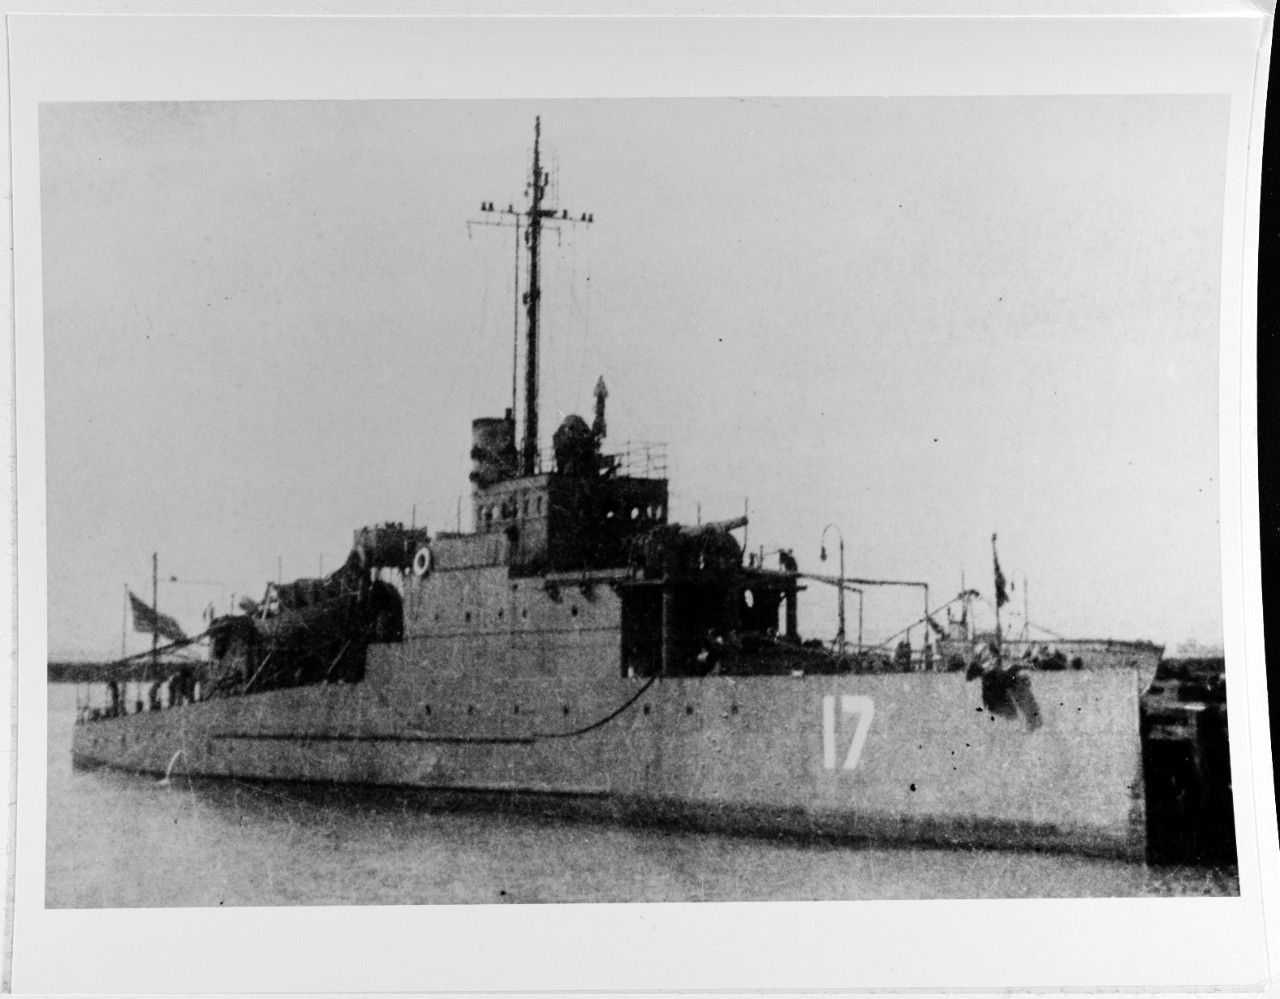 USS EAGLE 17 (PE-17)